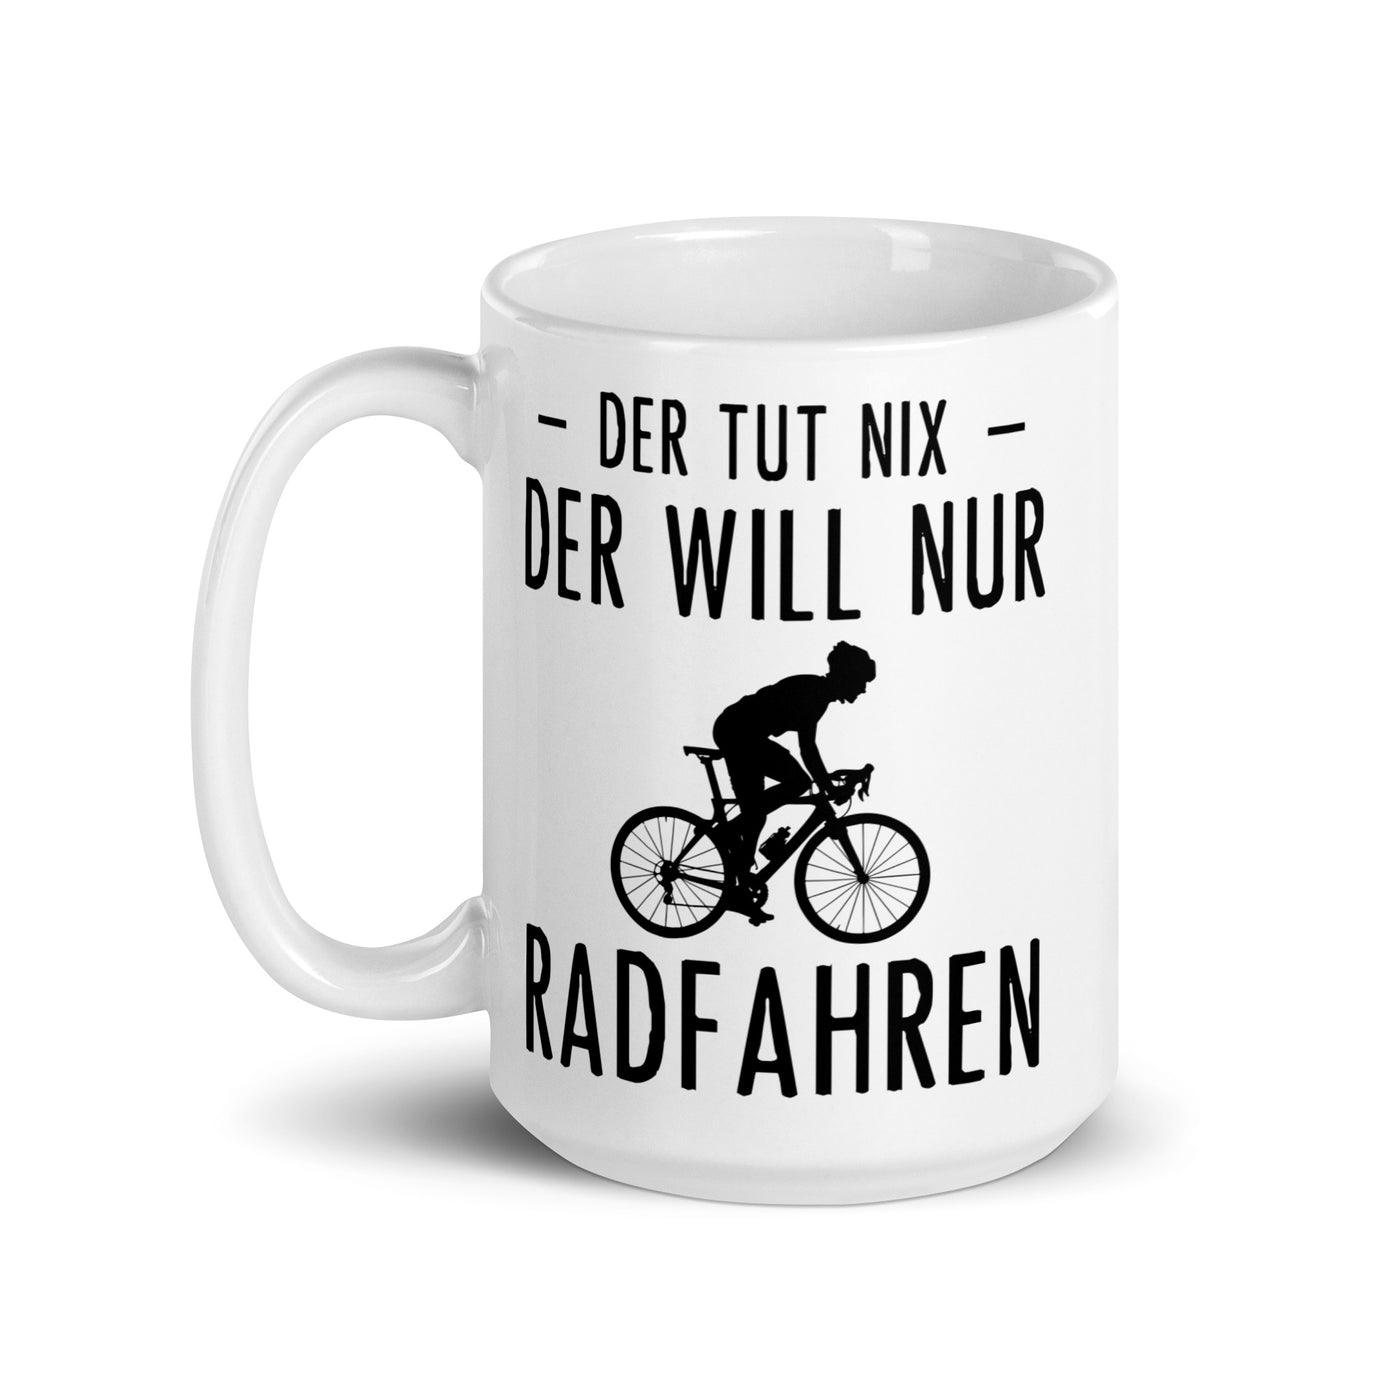 Der Tut Nix Der Will Nur Radfahren - Tasse fahrrad